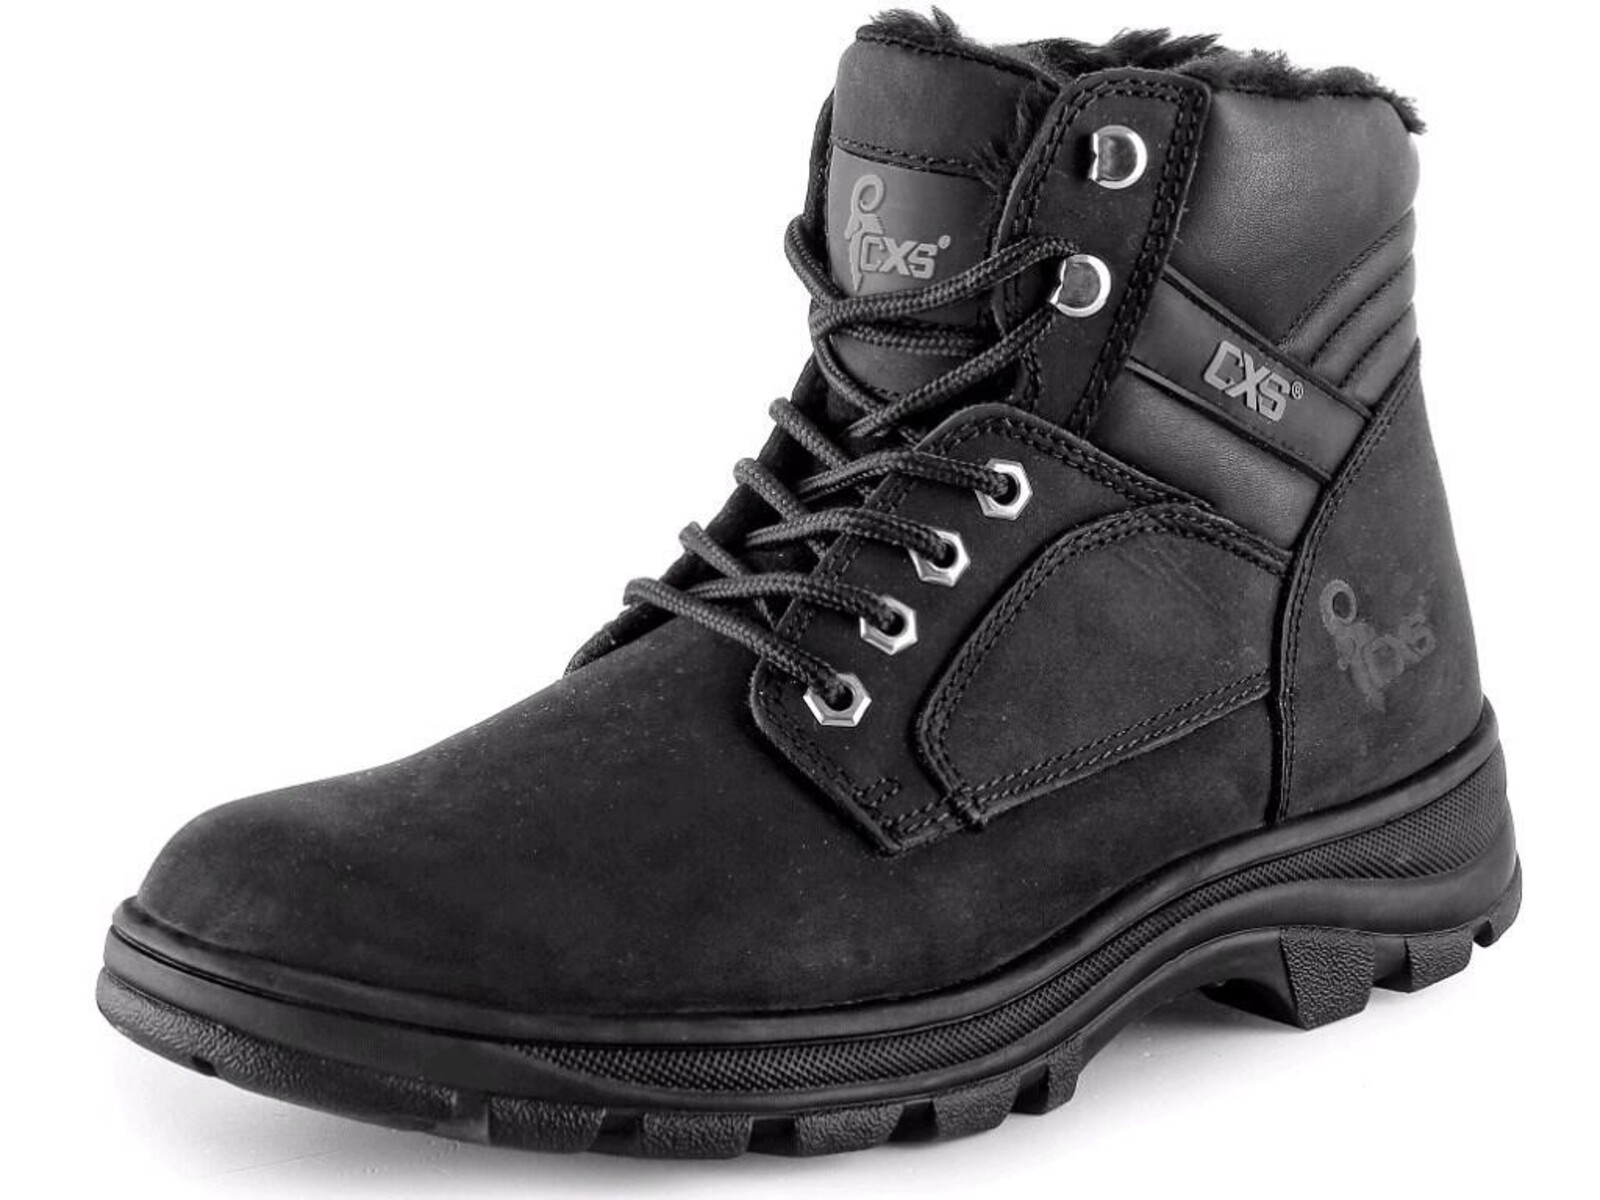 Zimná členková obuv CXS Road Industry FO E CI SRA - veľkosť: 38, farba: čierna